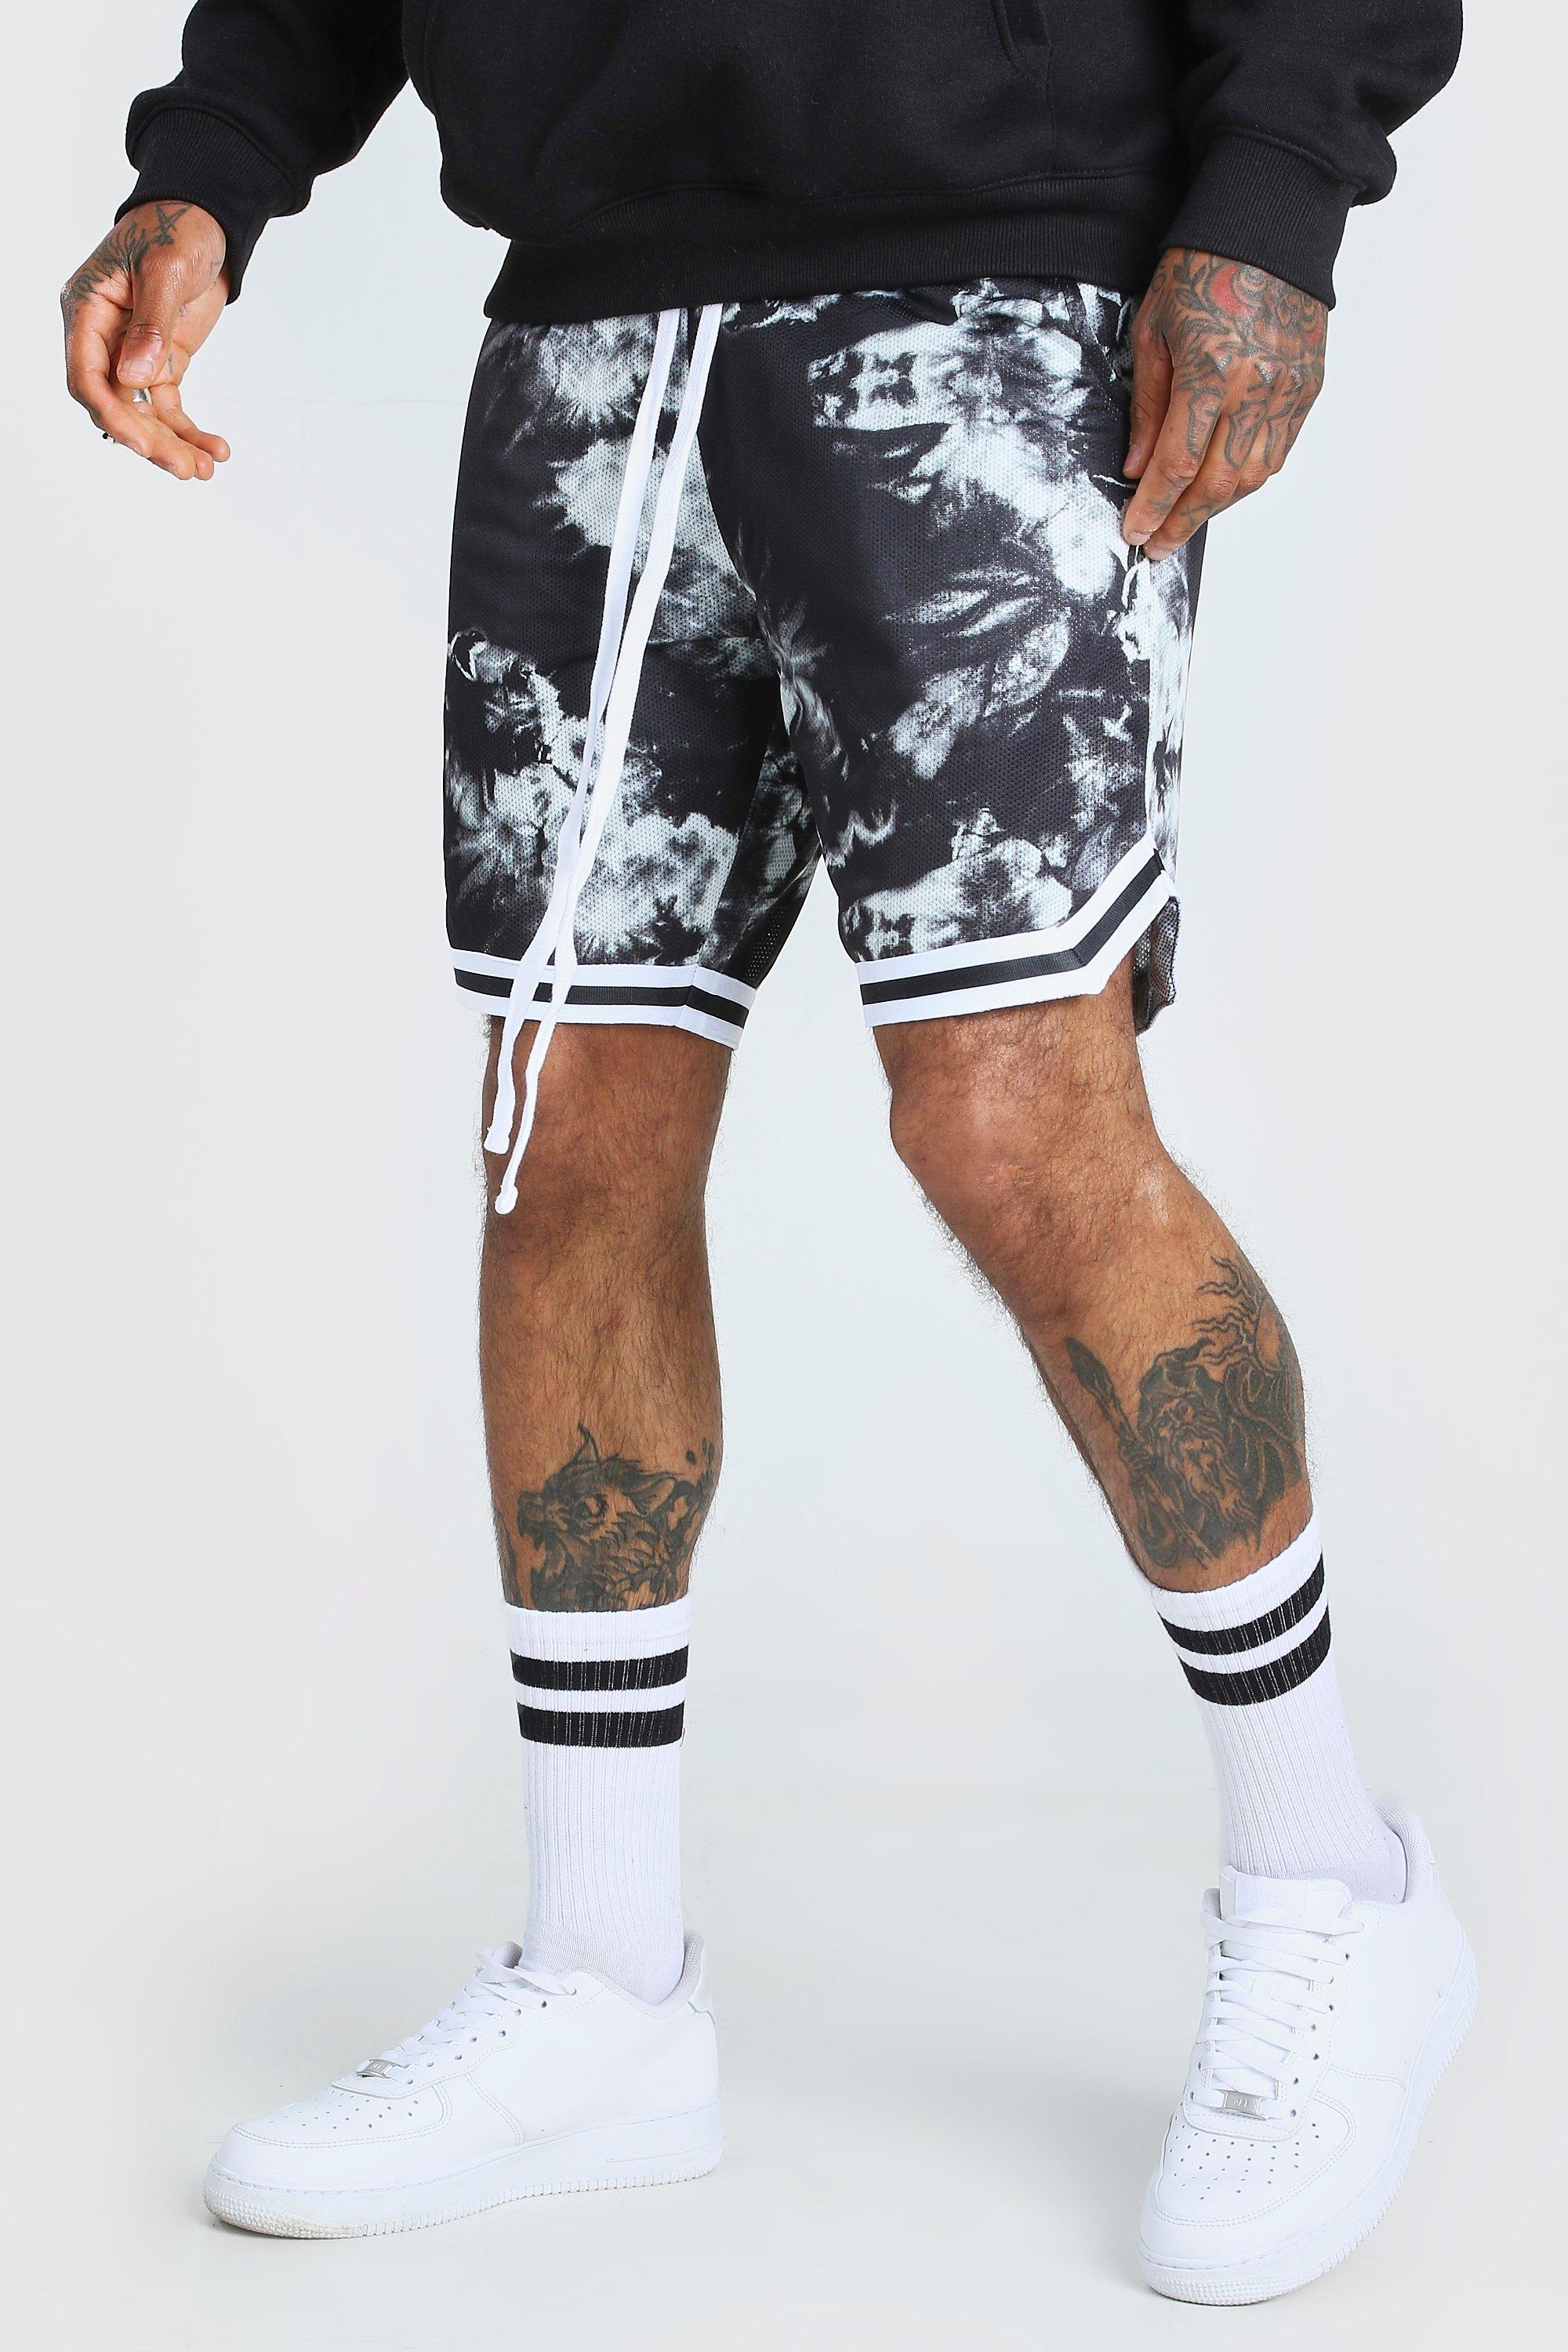 printed basketball shorts